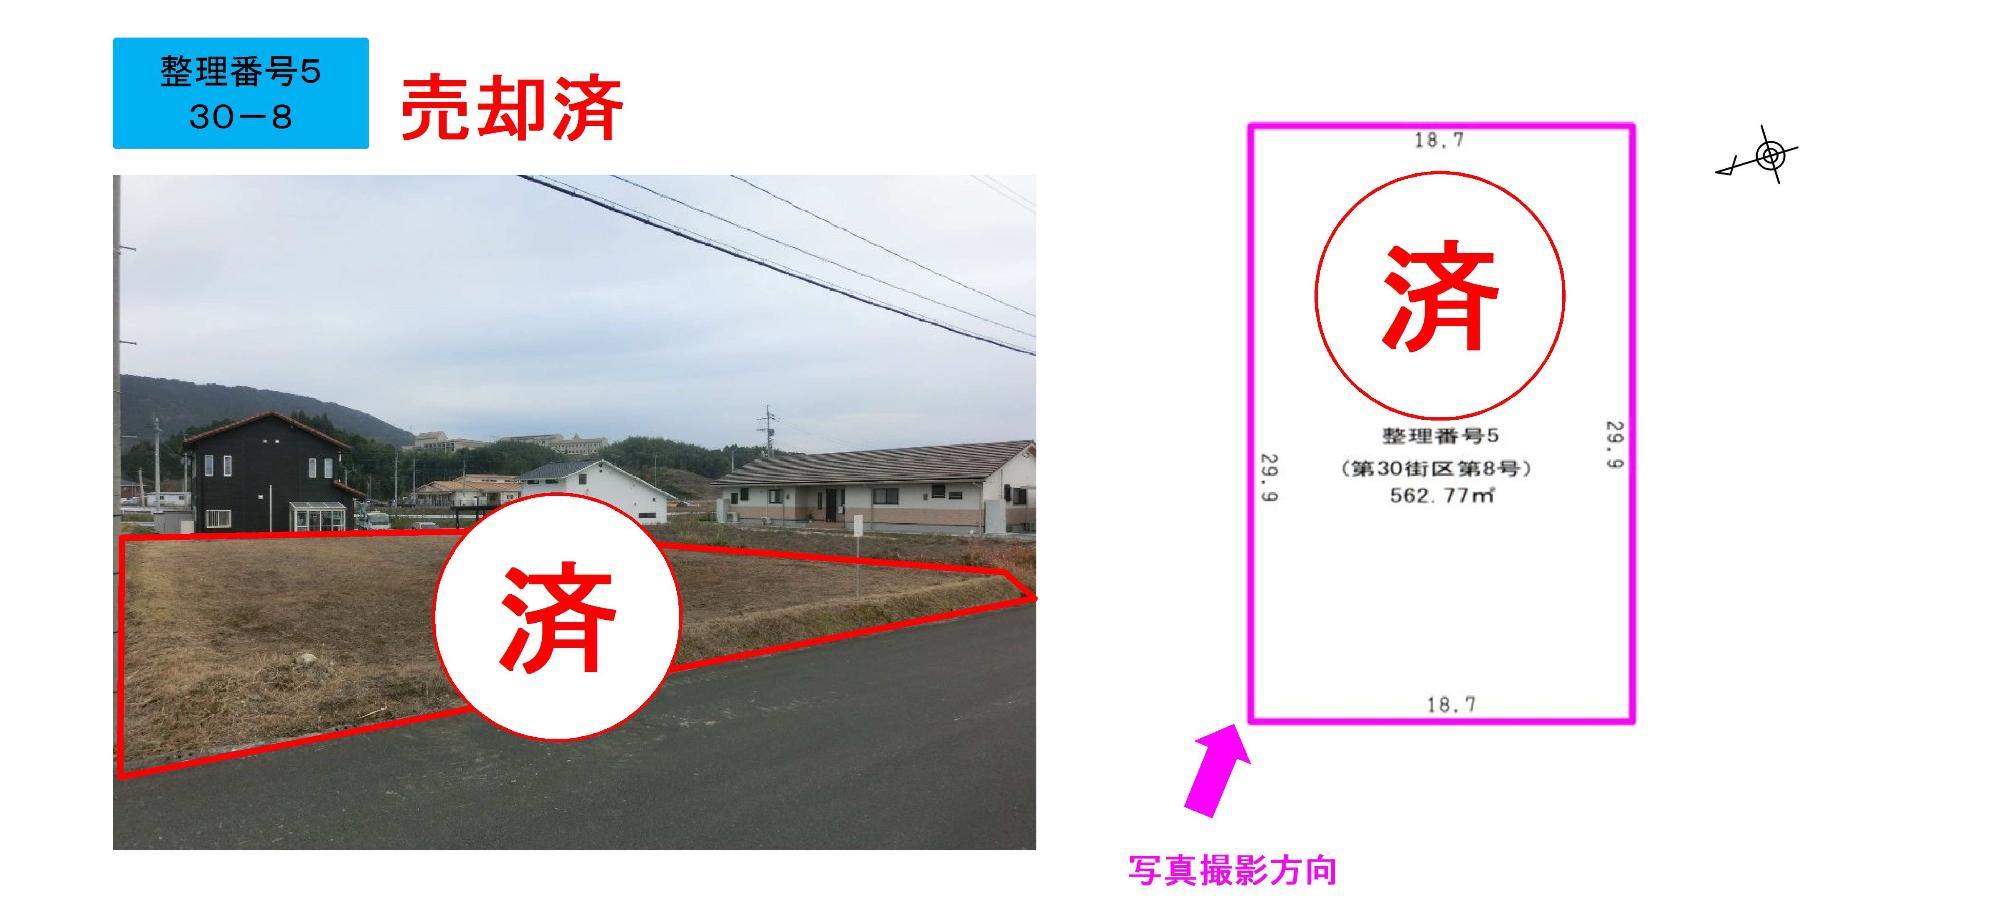 付近に住宅のある売却済みの保留地の土地に長方形の線が書かれた写真と、土地の範囲を示したイラスト